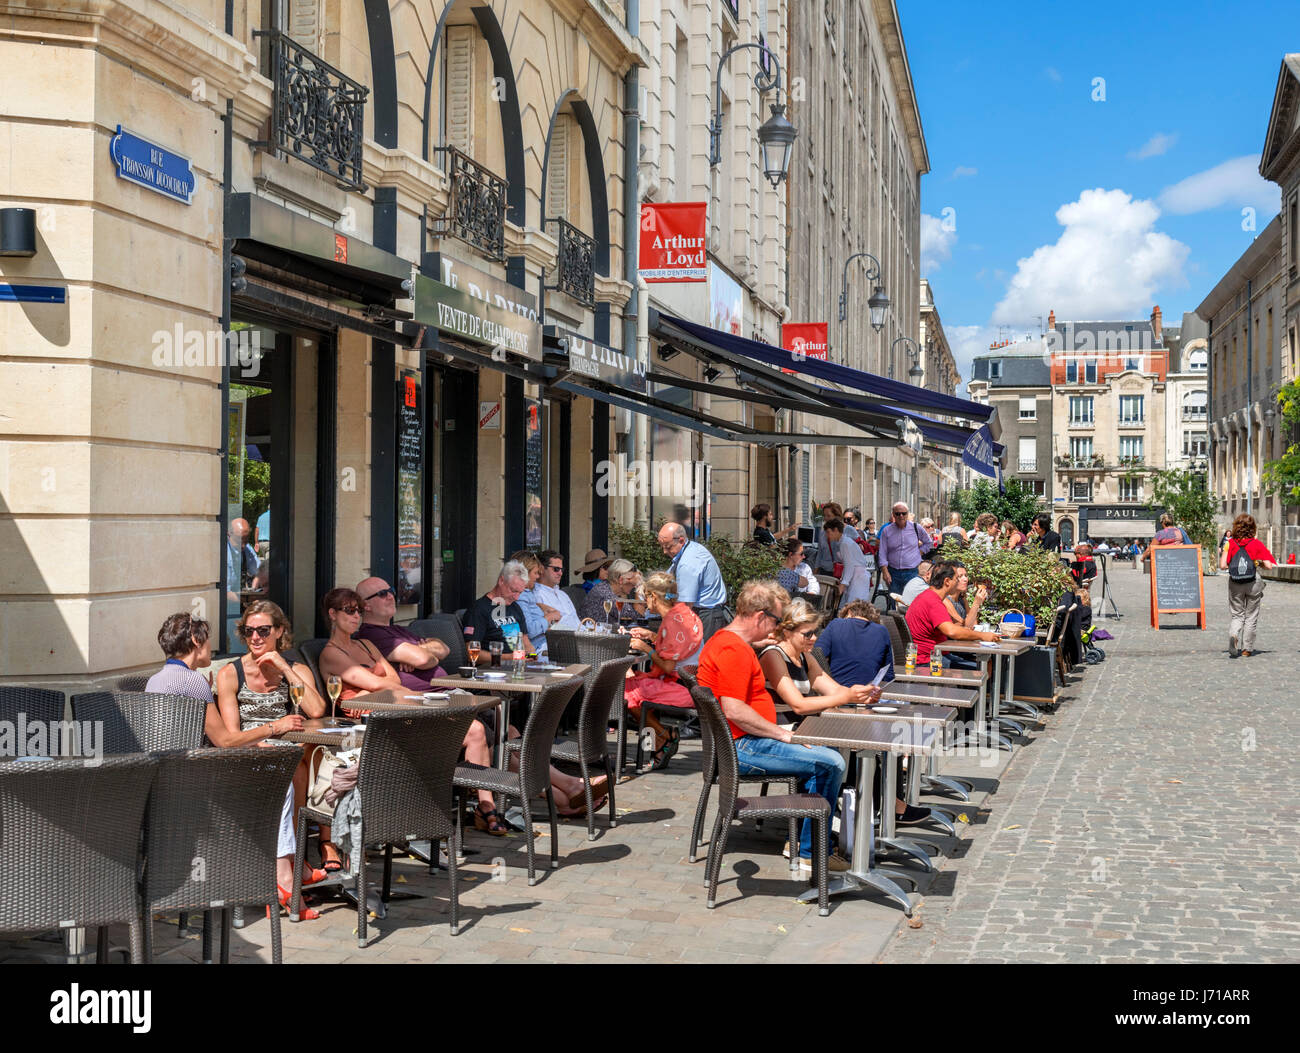 Des cafés et des boutiques à proximité de la cathédrale, Rue Tronsson Ducoudray, Reims, France Banque D'Images